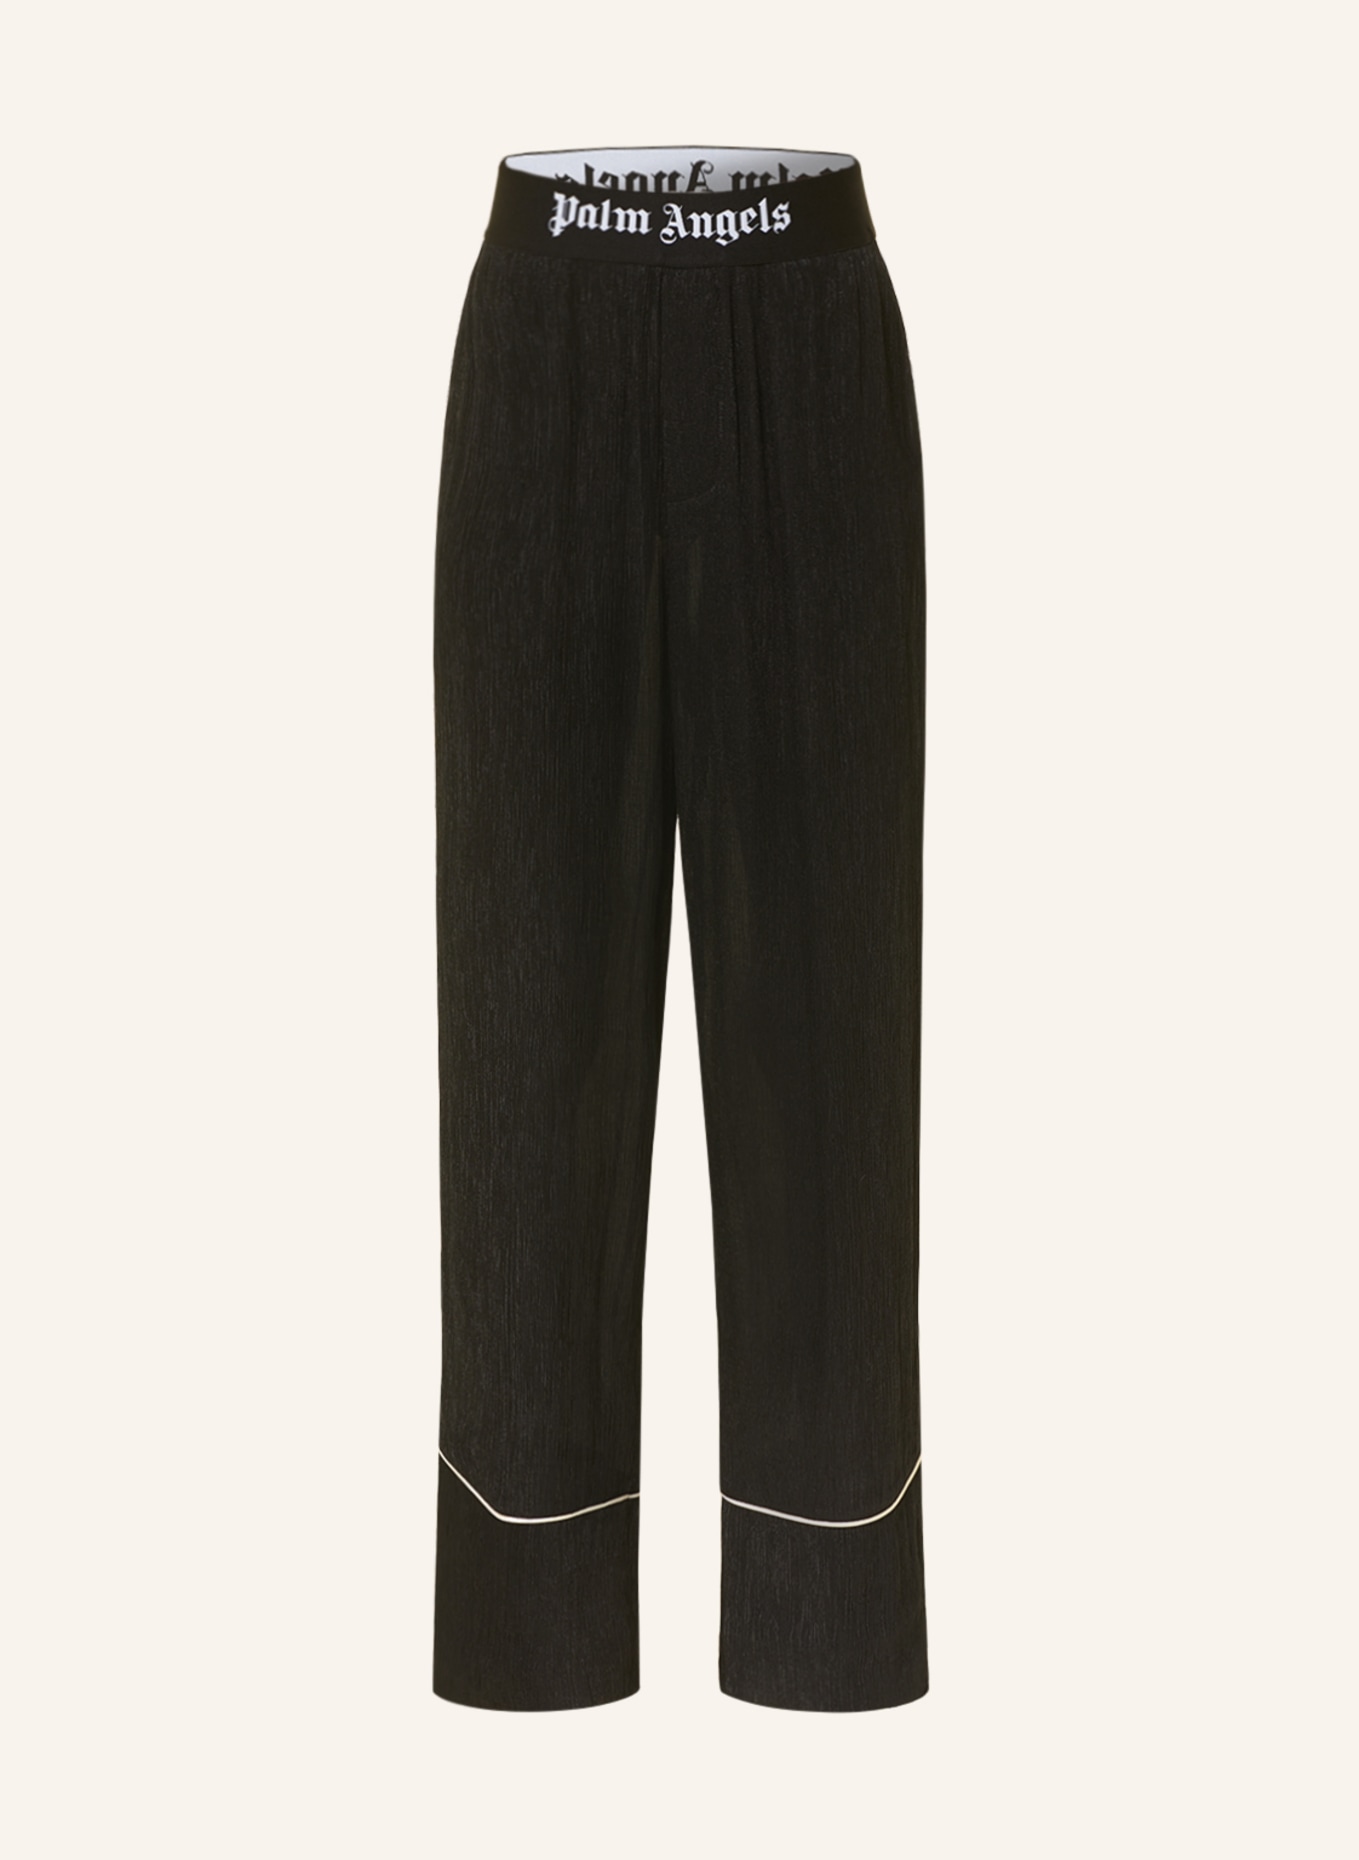 Palm Angels Lounge pants, Color: BLACK (Image 1)